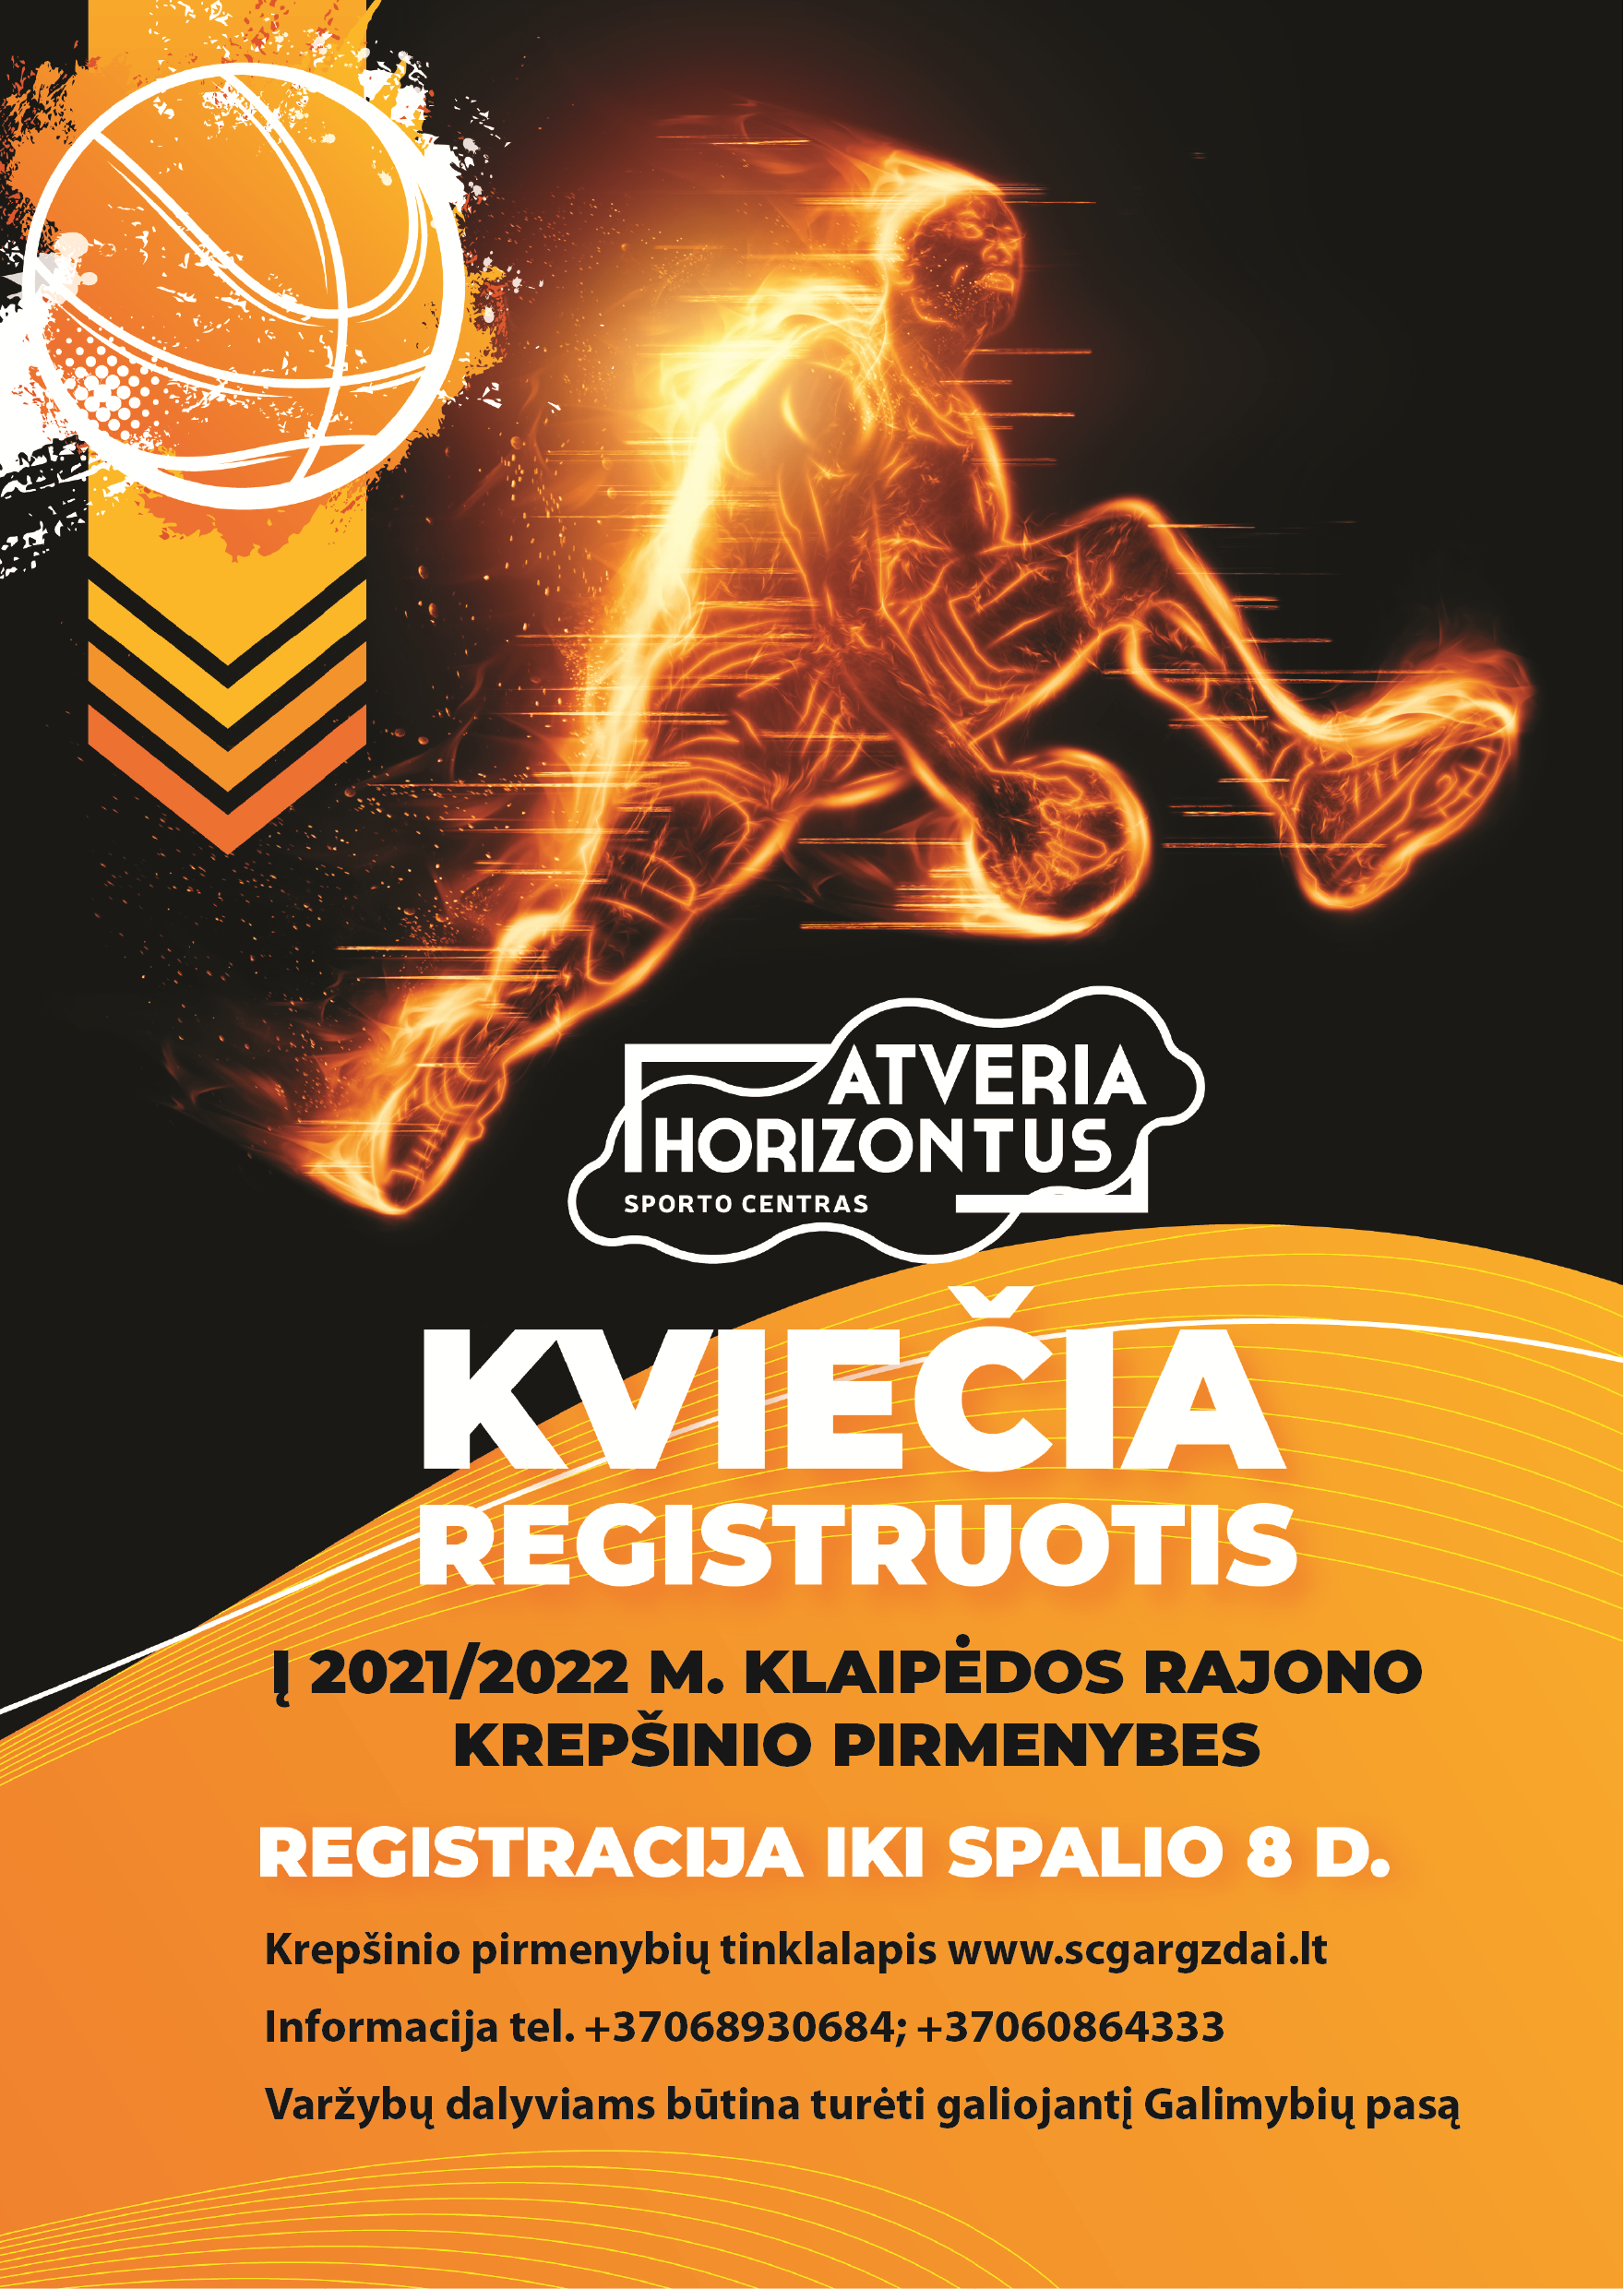 Prasidėjo registracija į 2021/2022 m. Klaipėdos rajono krepšinio pirmenybes